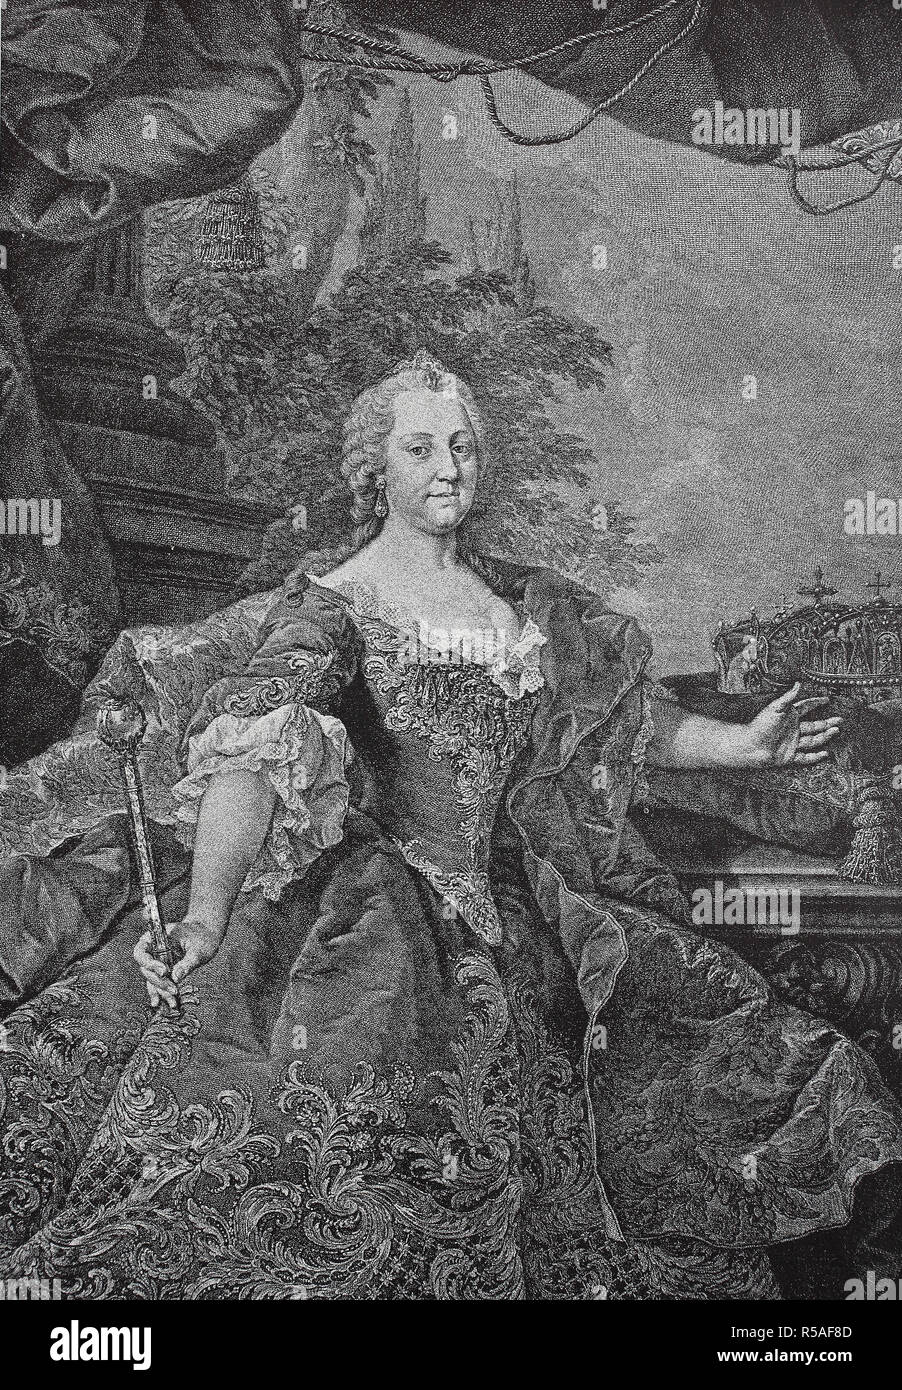 Maria Theresa Walburga Amalia Christina, 13 mai 1717, 29 novembre 1780, souverain de l'Autriche, la Hongrie, la gravure sur bois, Autriche Banque D'Images